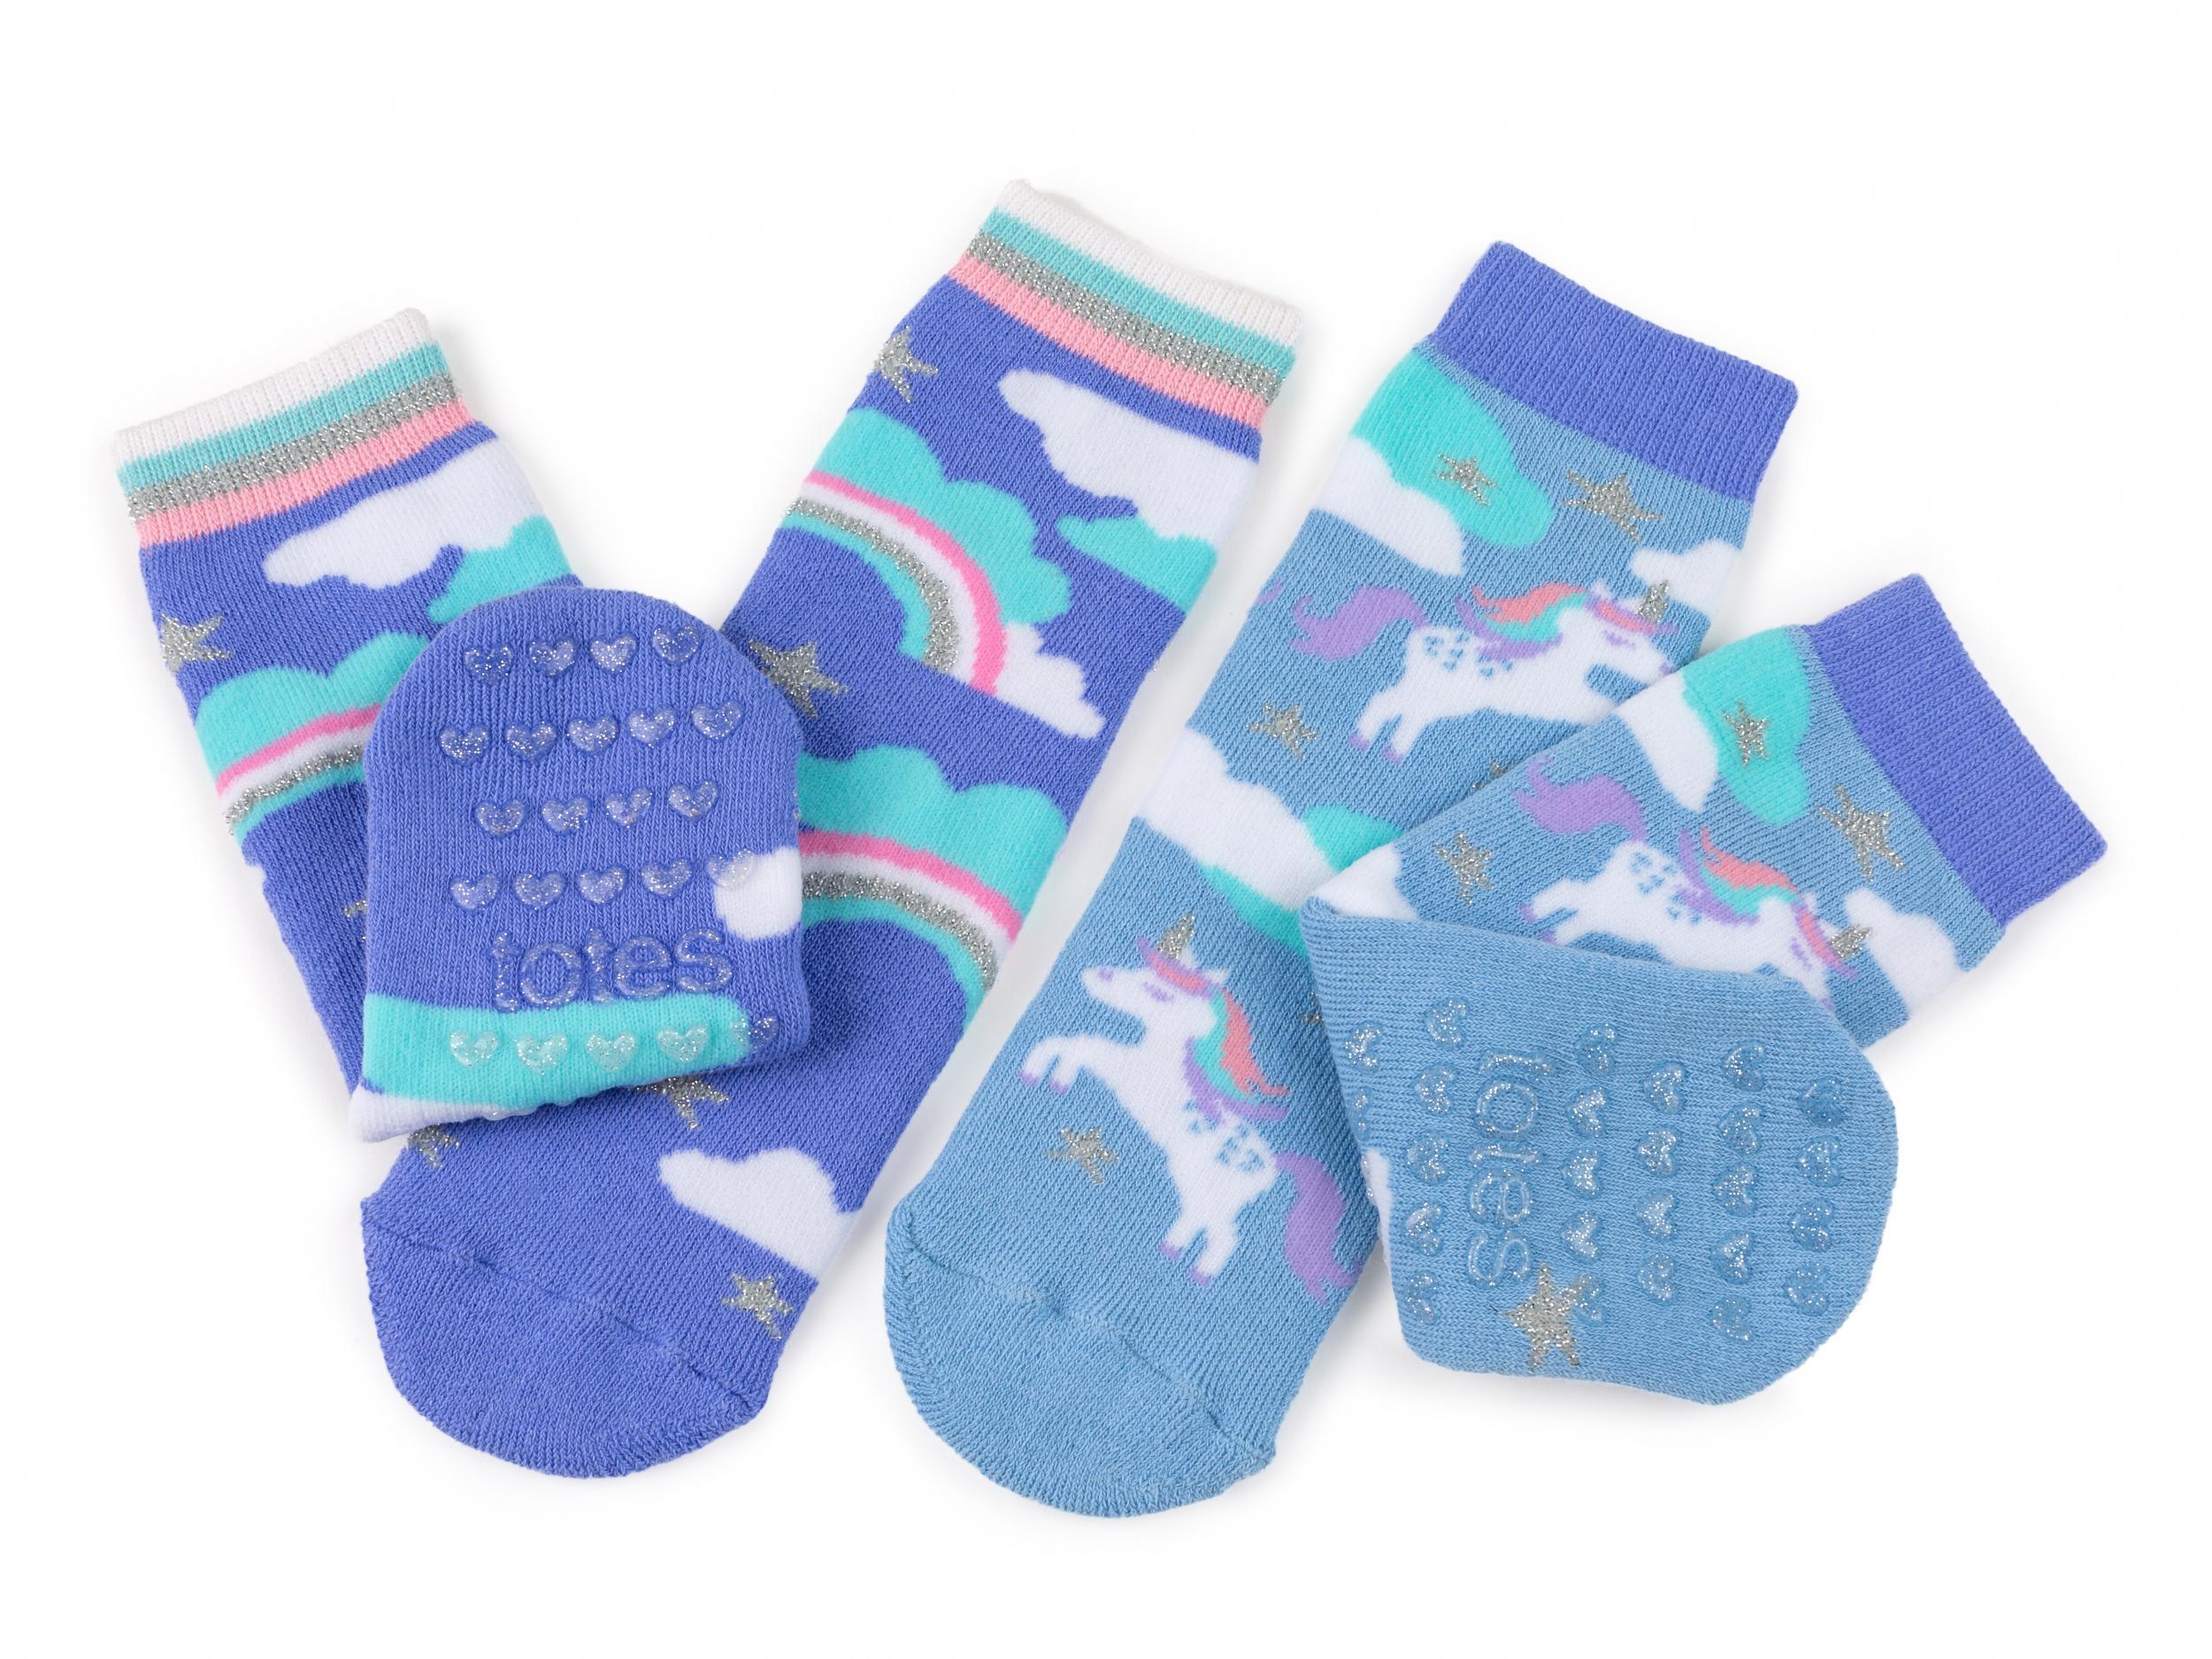 Best slipper socks for toddlers that 